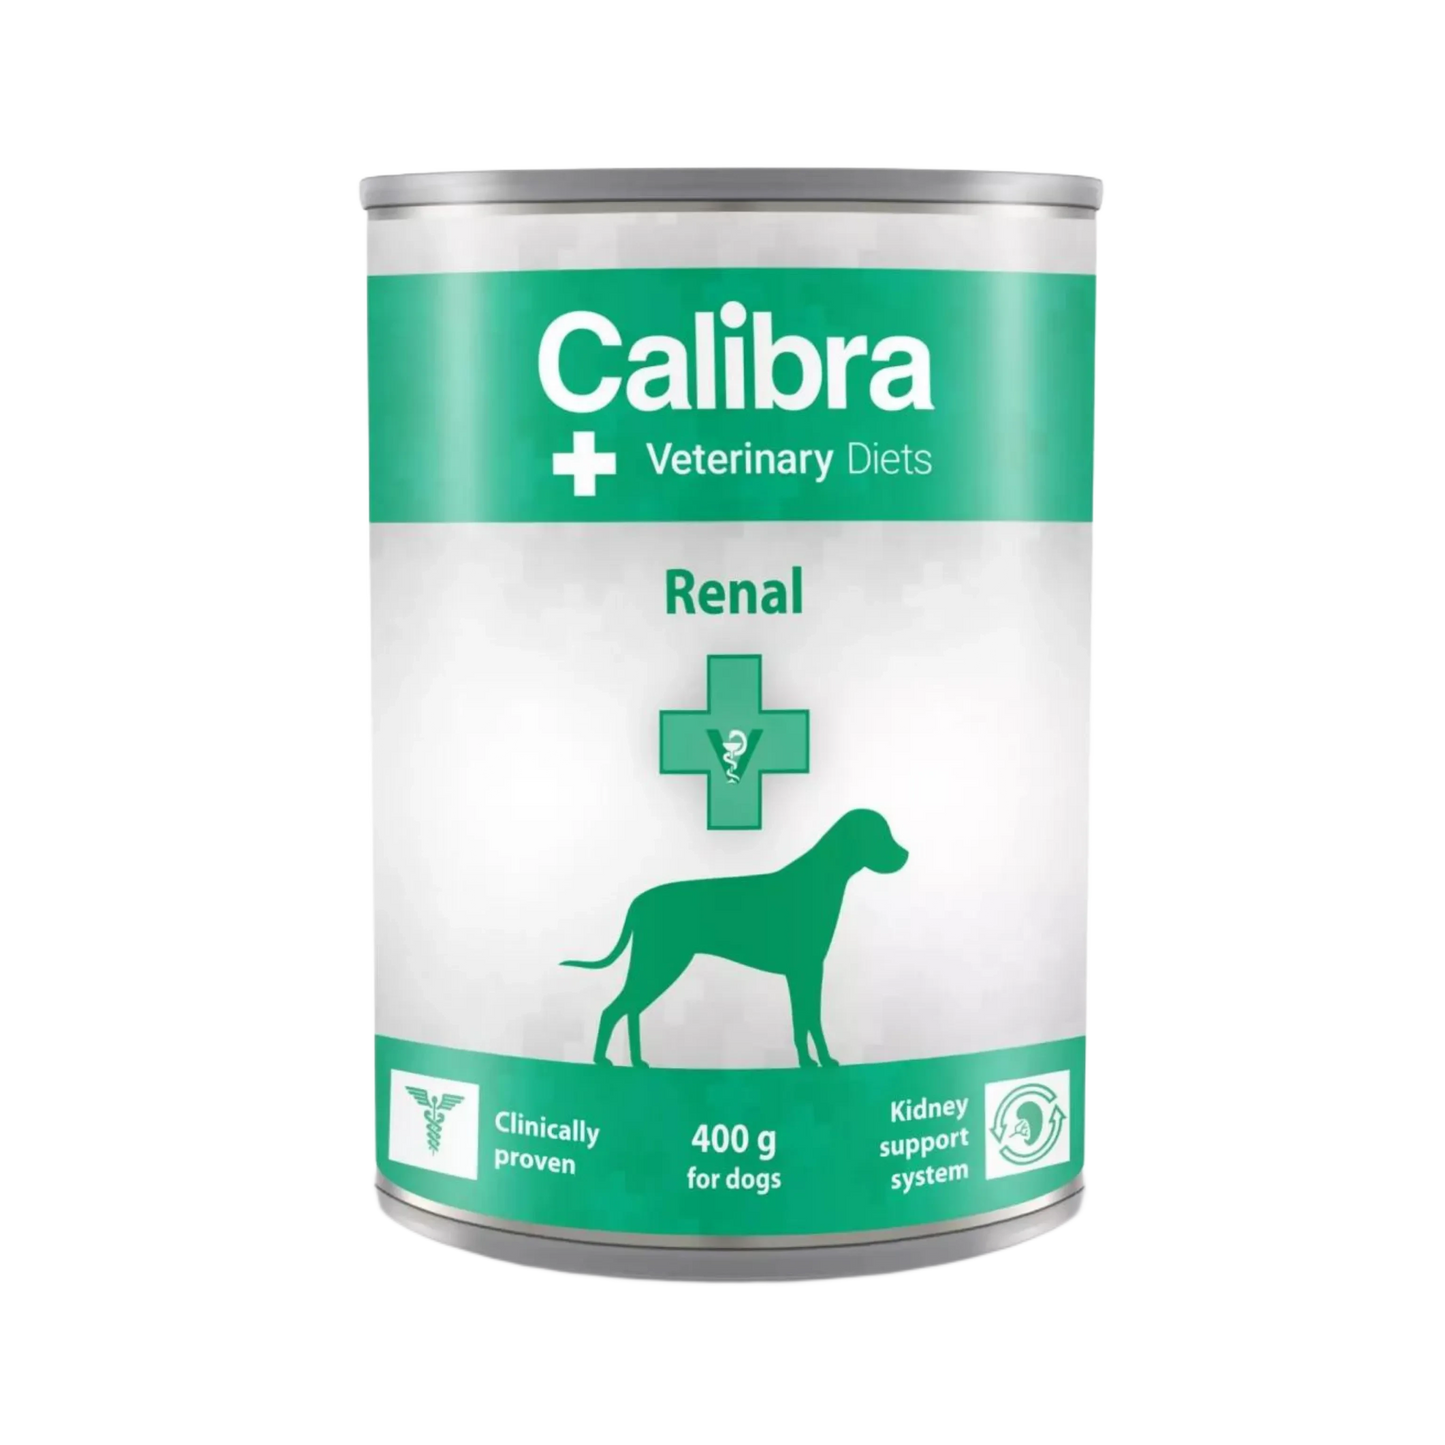 CALIBRA RENAL DOG CAN FOOD 400GM